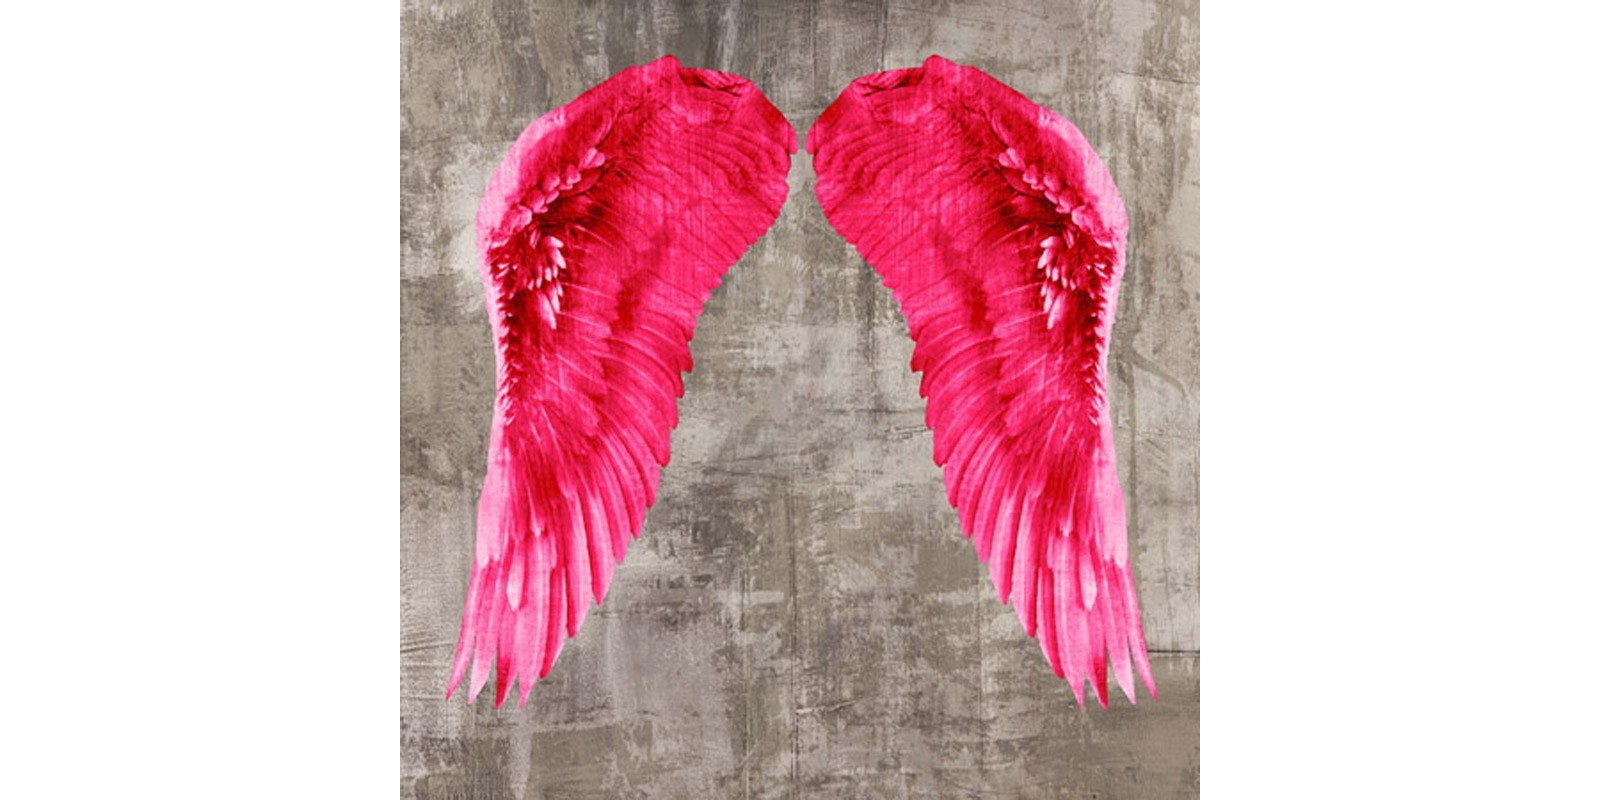 Joannoo - Angel Wings VI